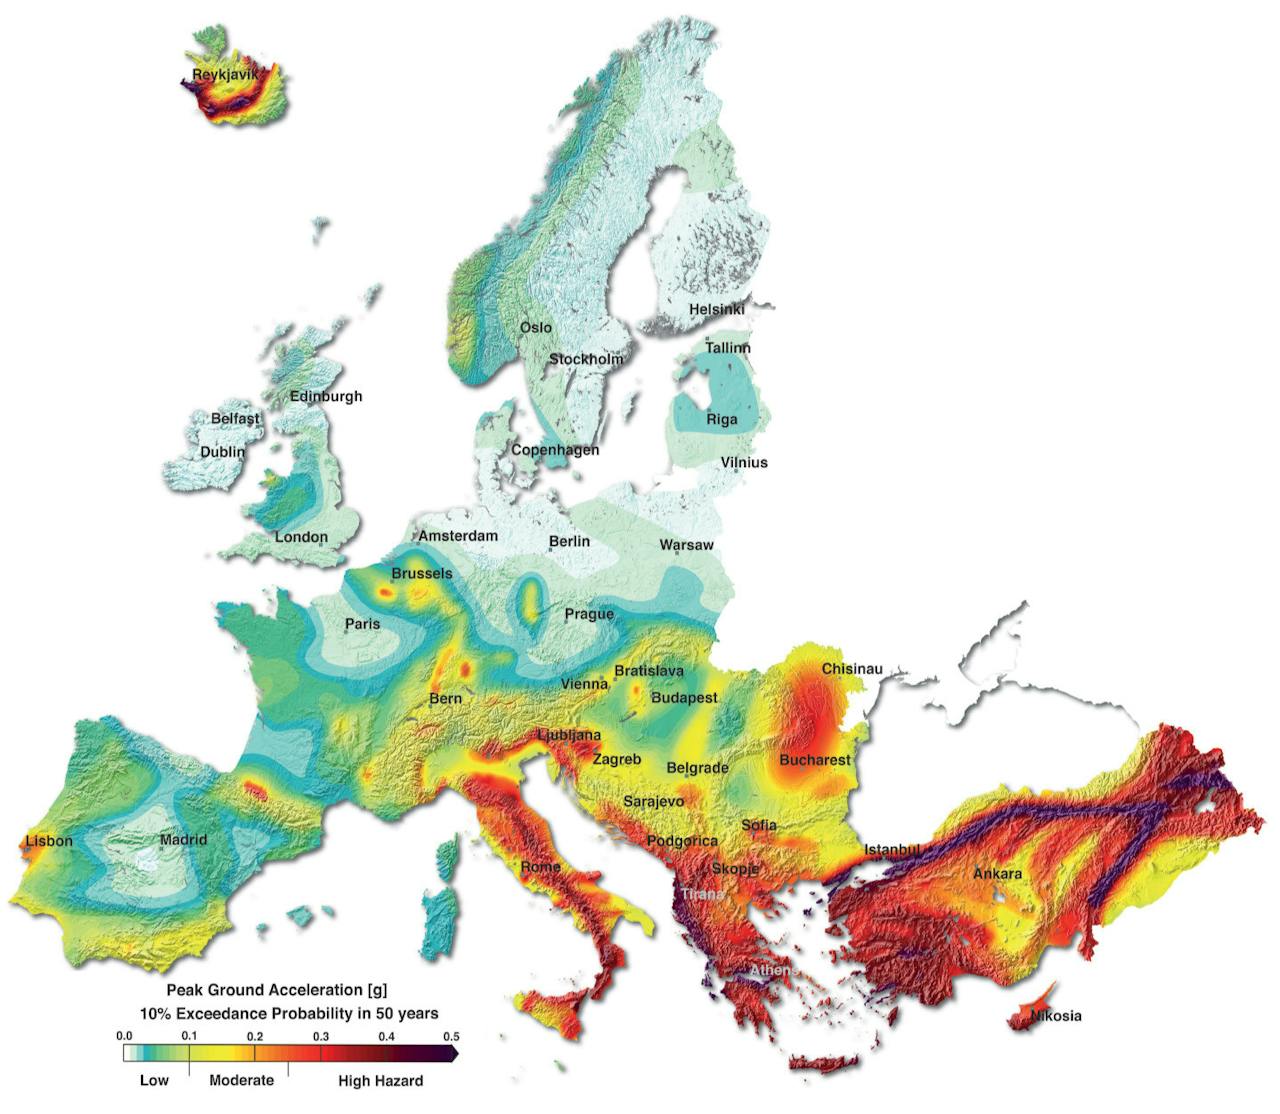 Aarbevingsrisicokaart van Europa. De kleuren geven de grondversnelling aan.